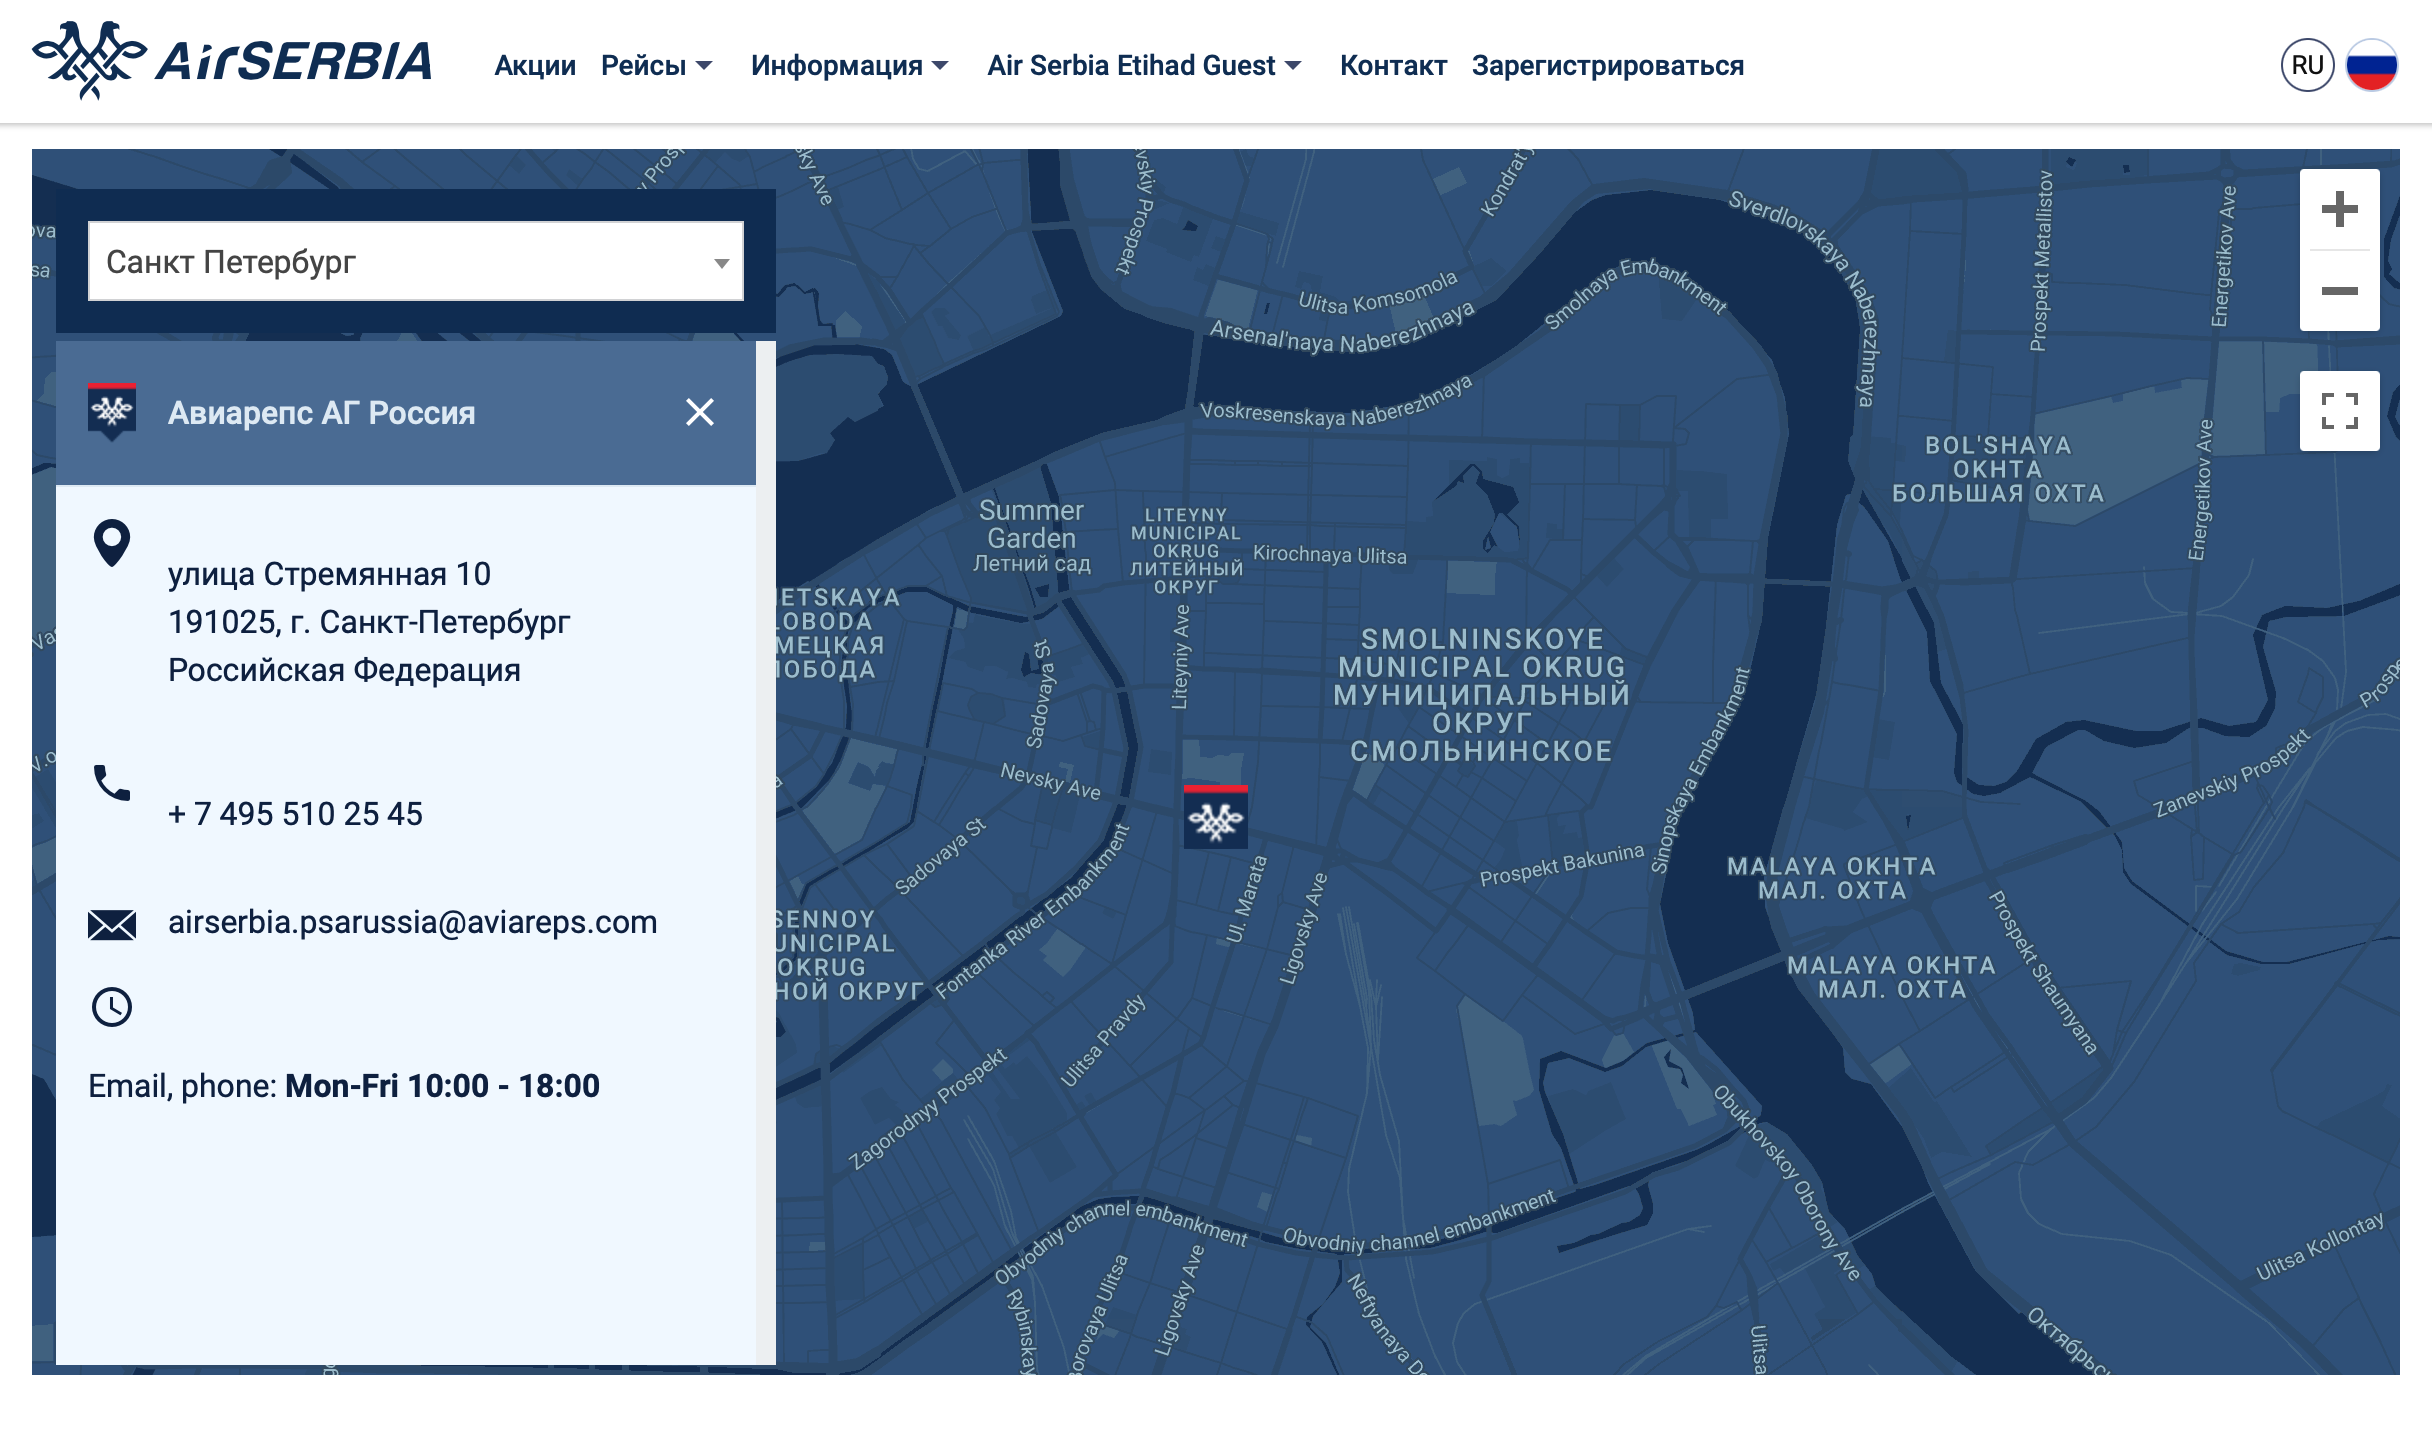 Адреса офисов смотрят на официальных сайтах авиакомпаний. Например, у Air Serbia есть поиск по городам. Источник: airserbia.com